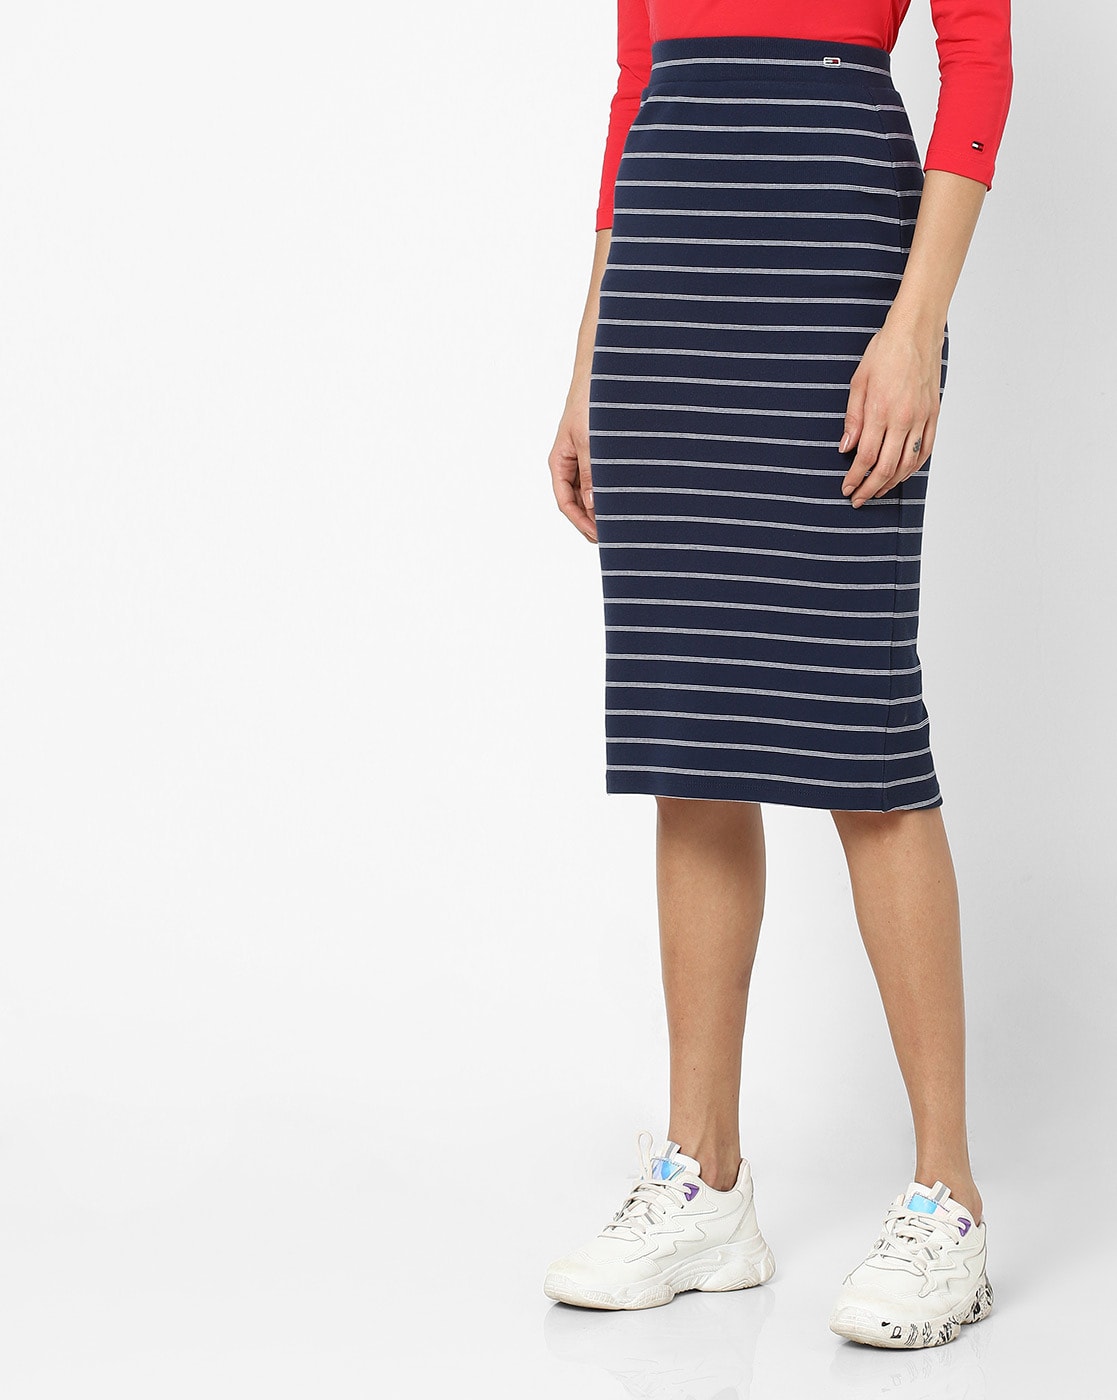 white striped skirt navy blue